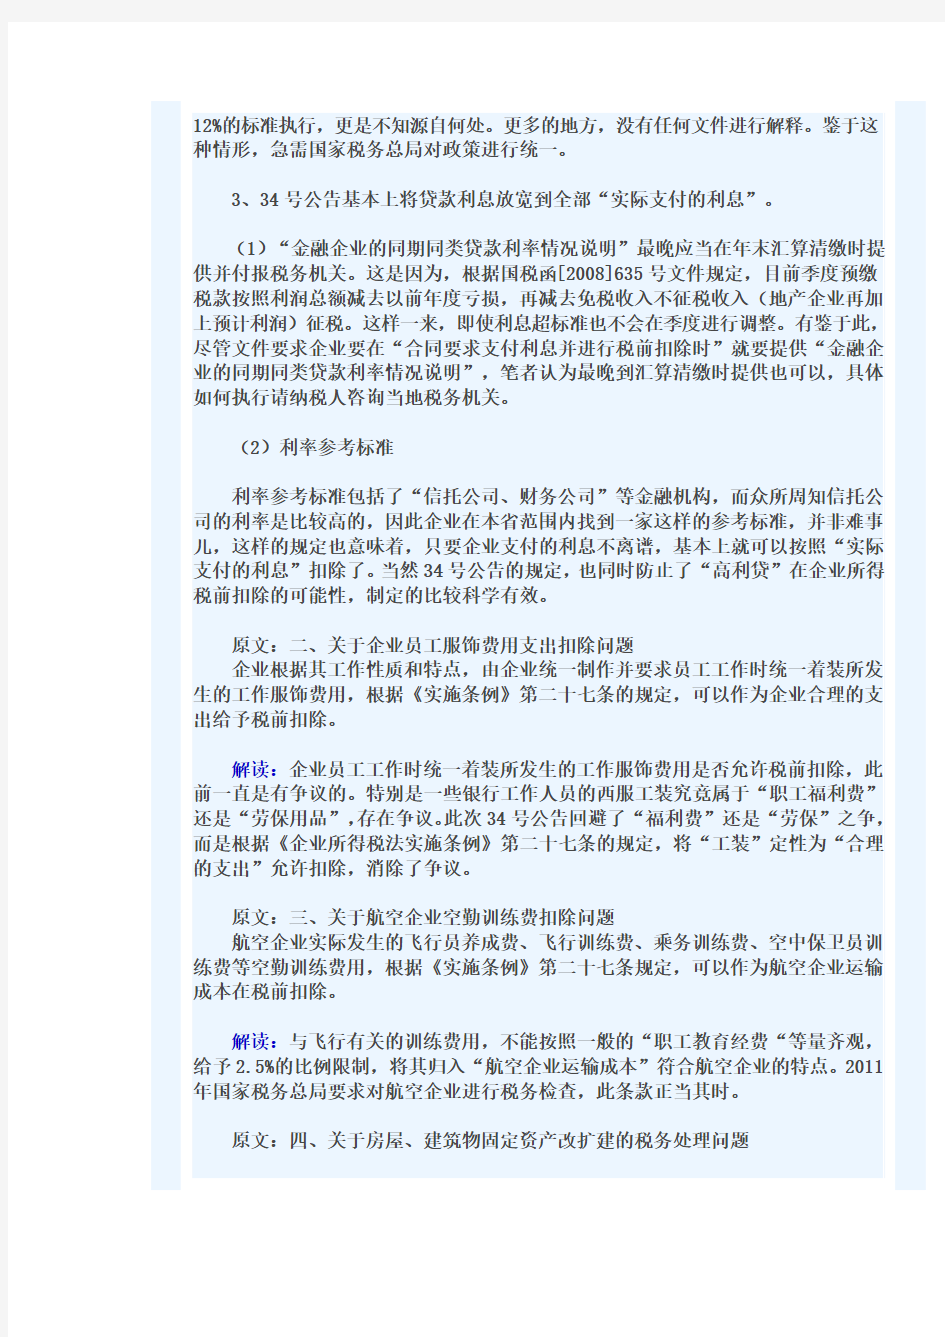 张伟老师解读国家税务总局2011年34号公告